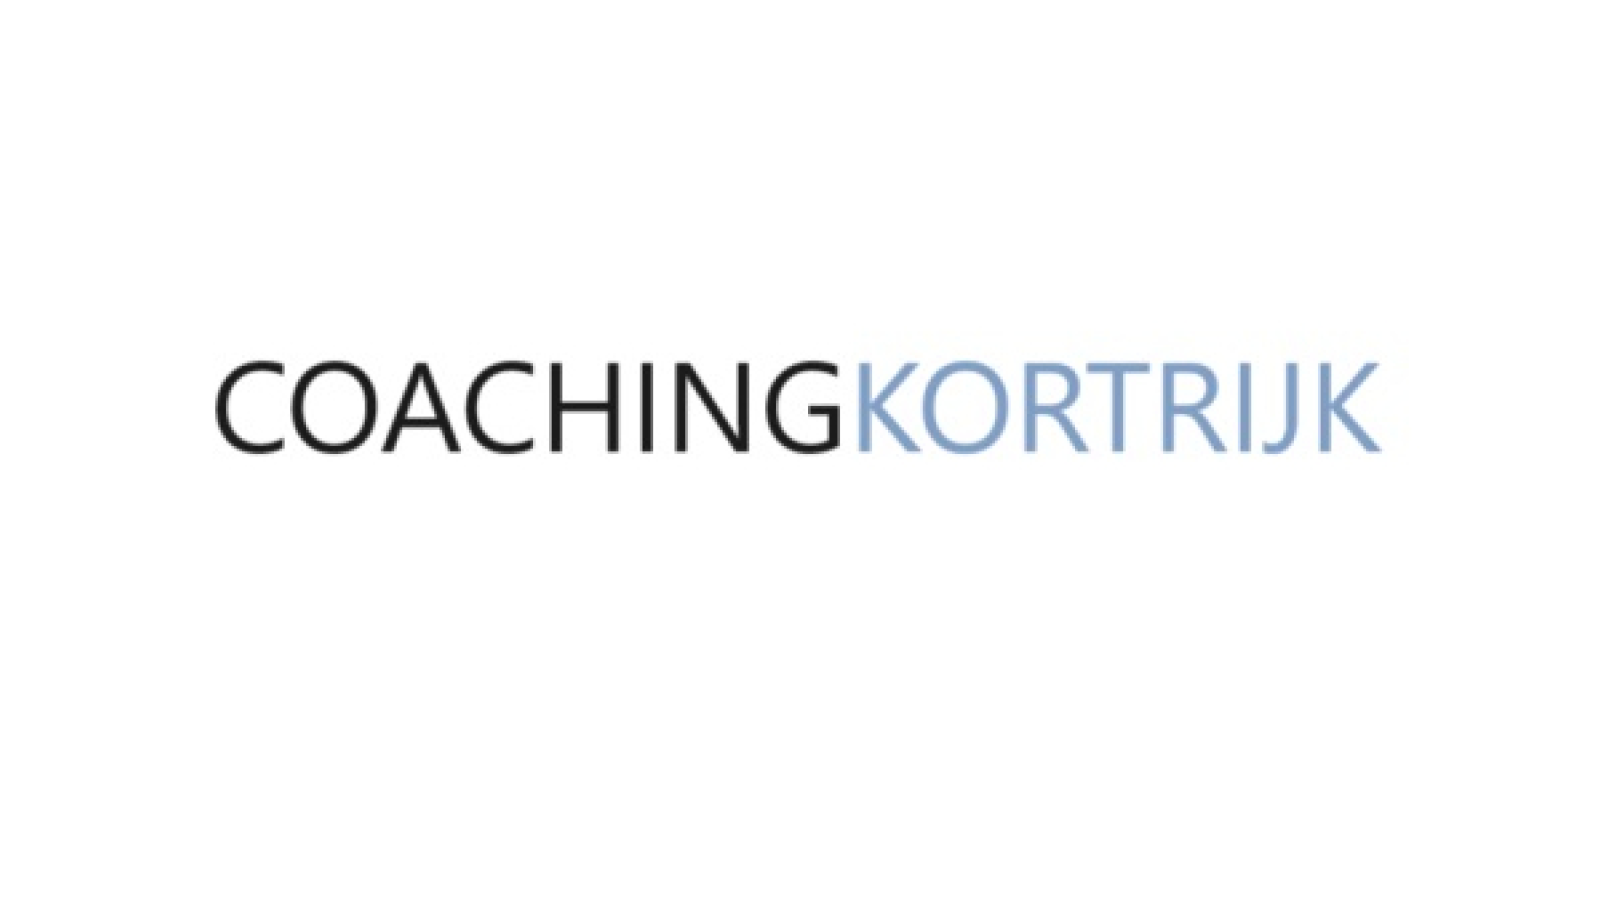 angstcoach/ executive coach  coaching kortrijk